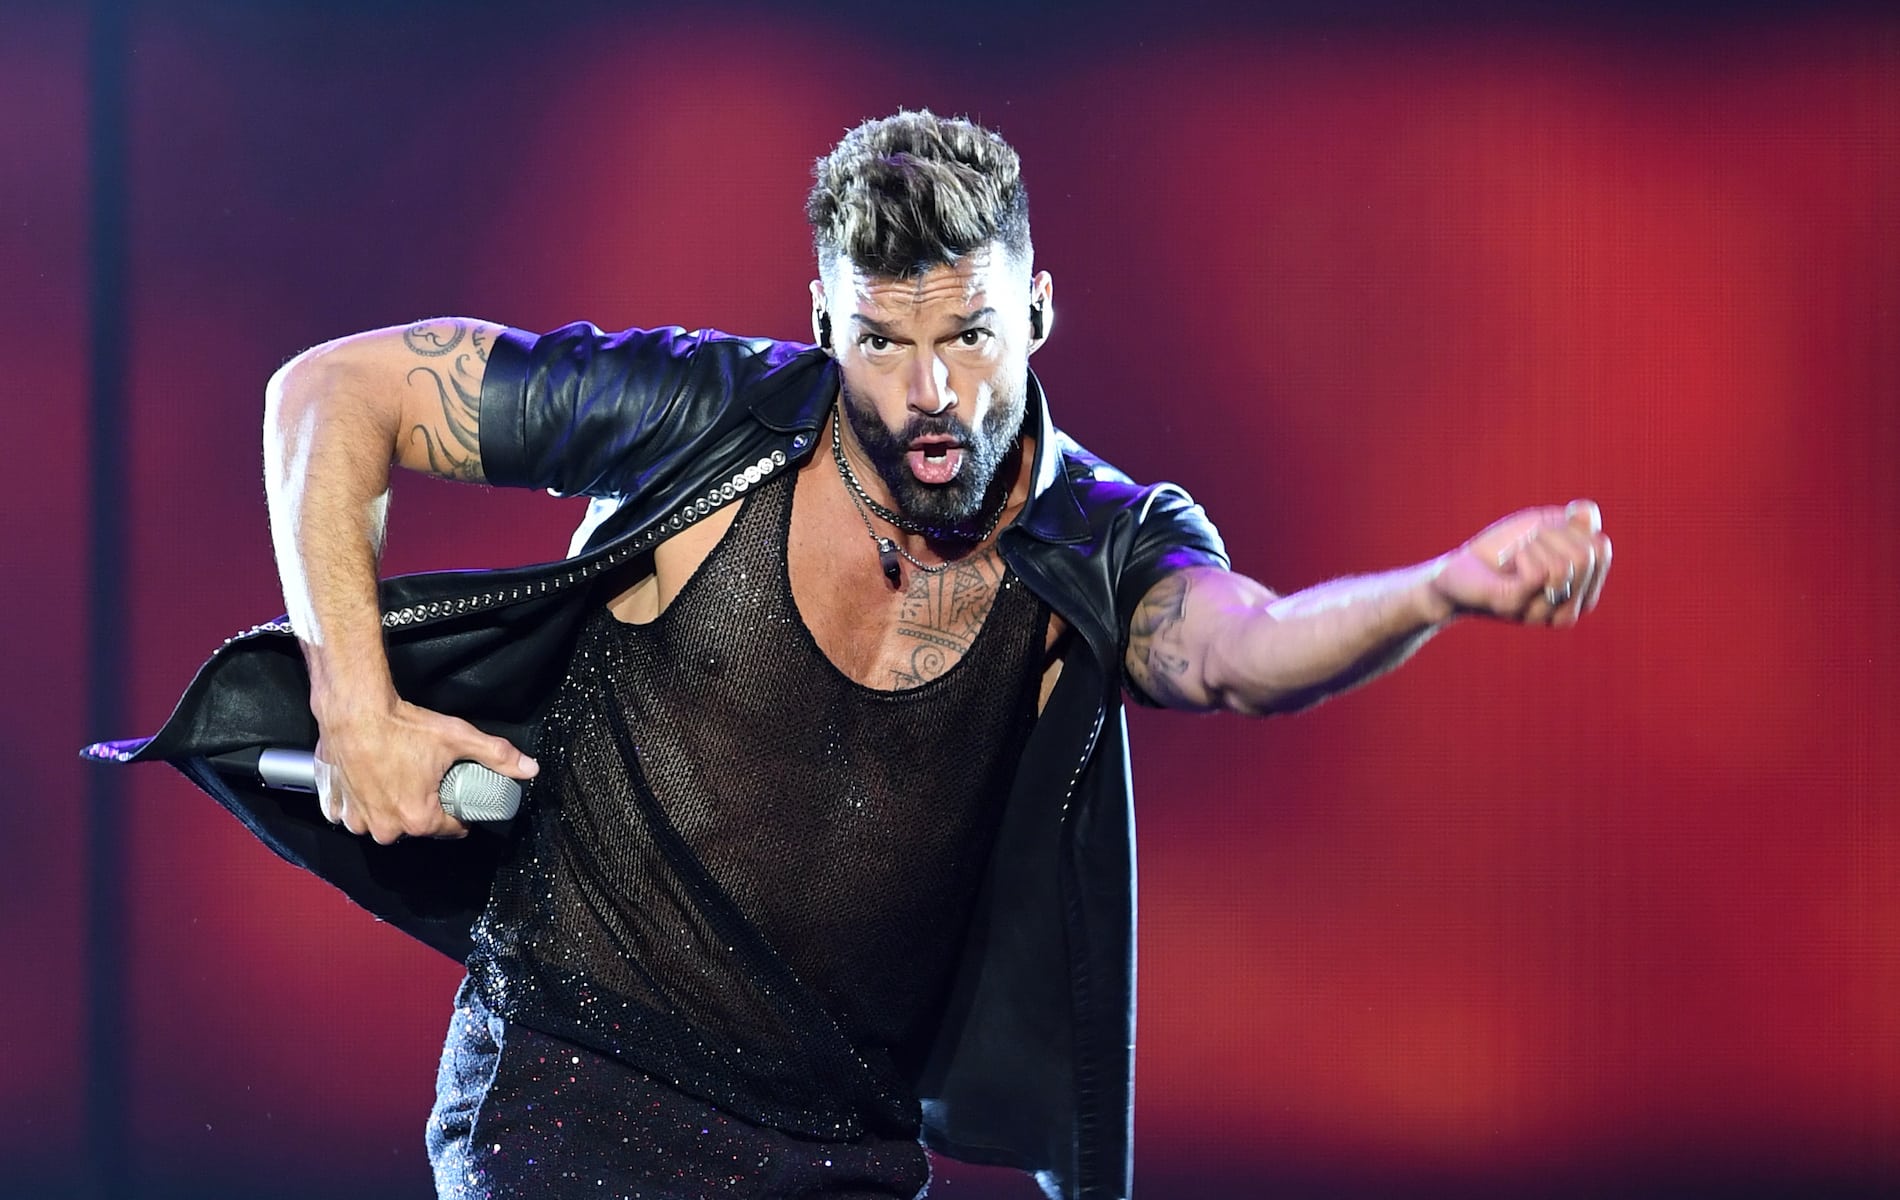 Sobrino de Ricky Martin lo denuncia por incesto; artista se expone a 50 años de cárcel si lo hallan culpable